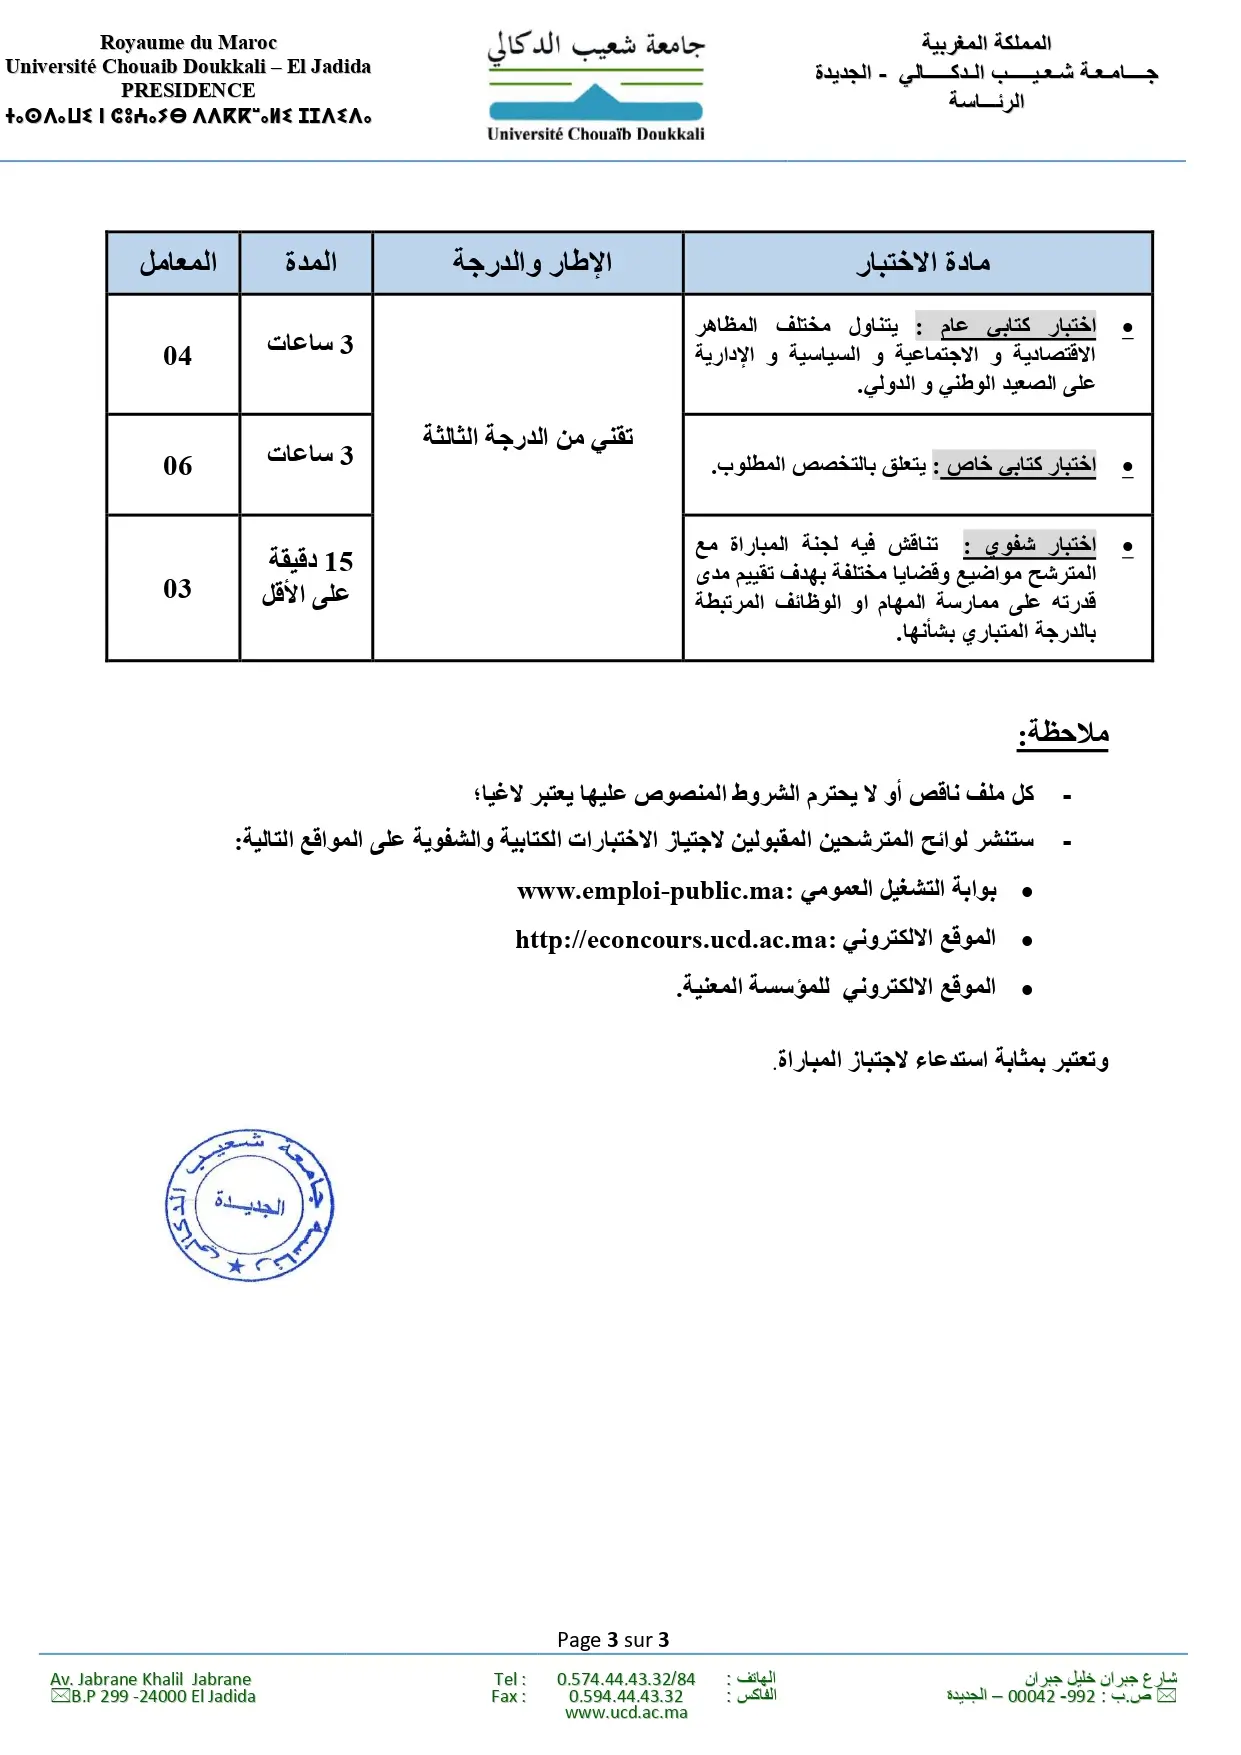 Concours Université Chouaib Doukkali 2023 (13 postes)